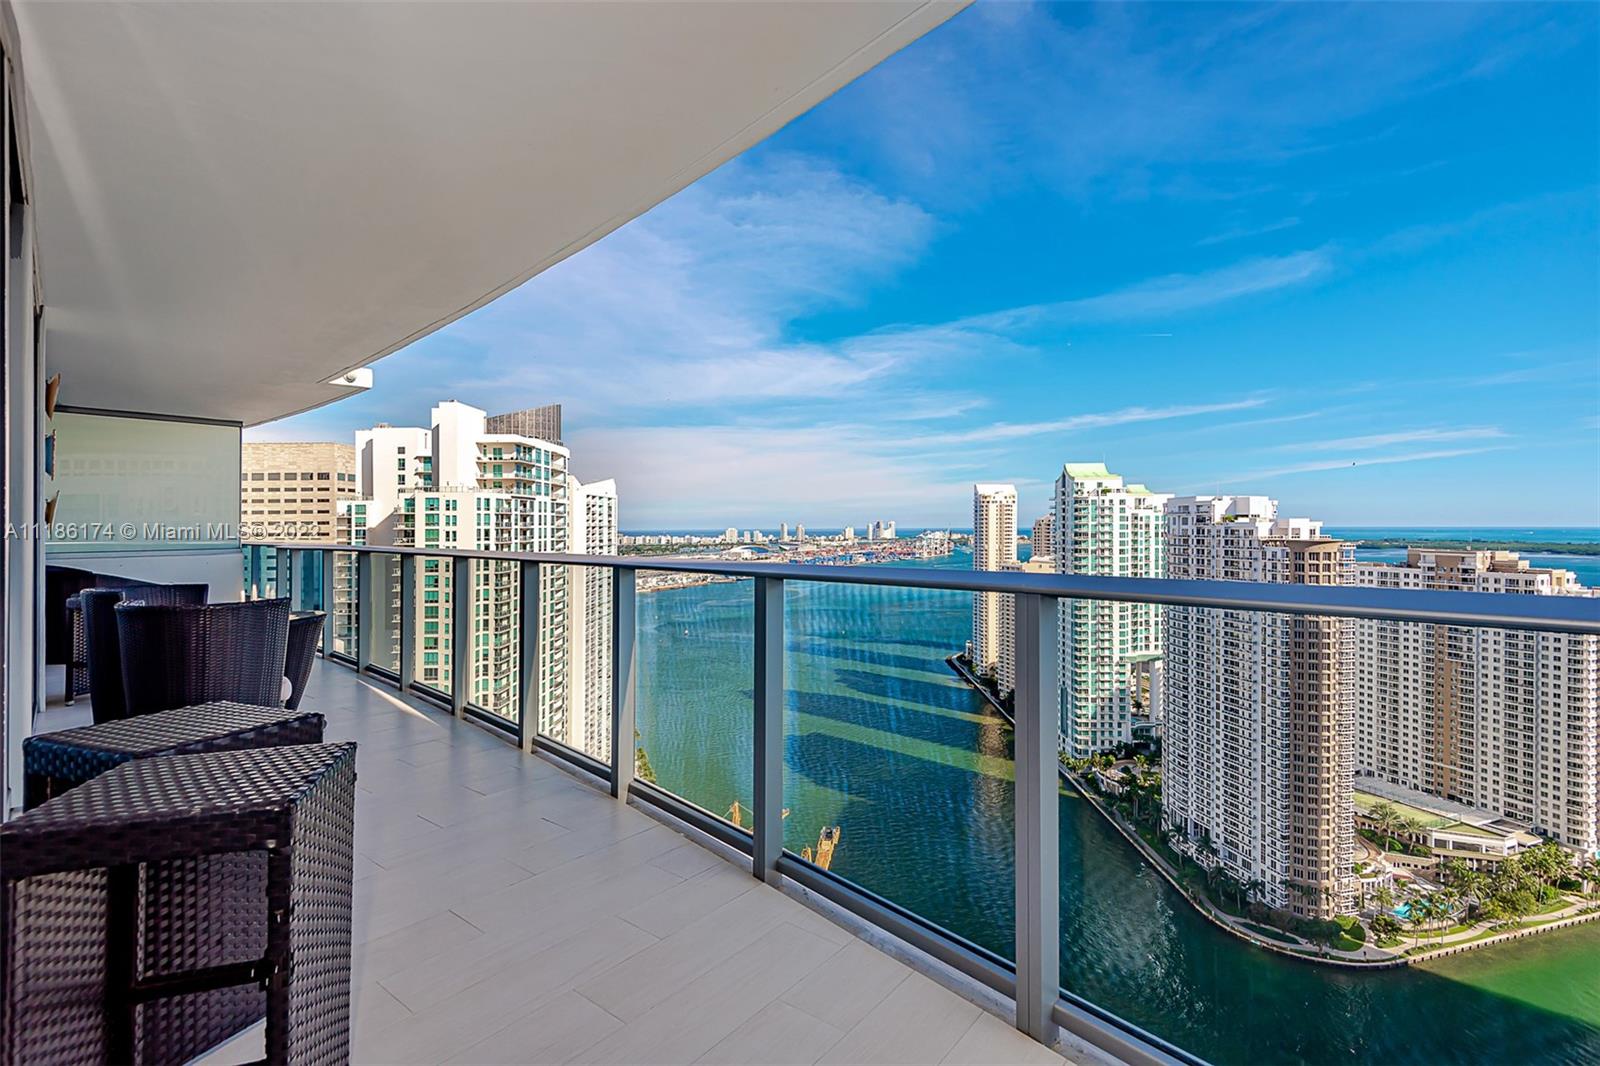 Photo 1 of Epic Residences Miami Apt 3907 in Miami - MLS A11186174